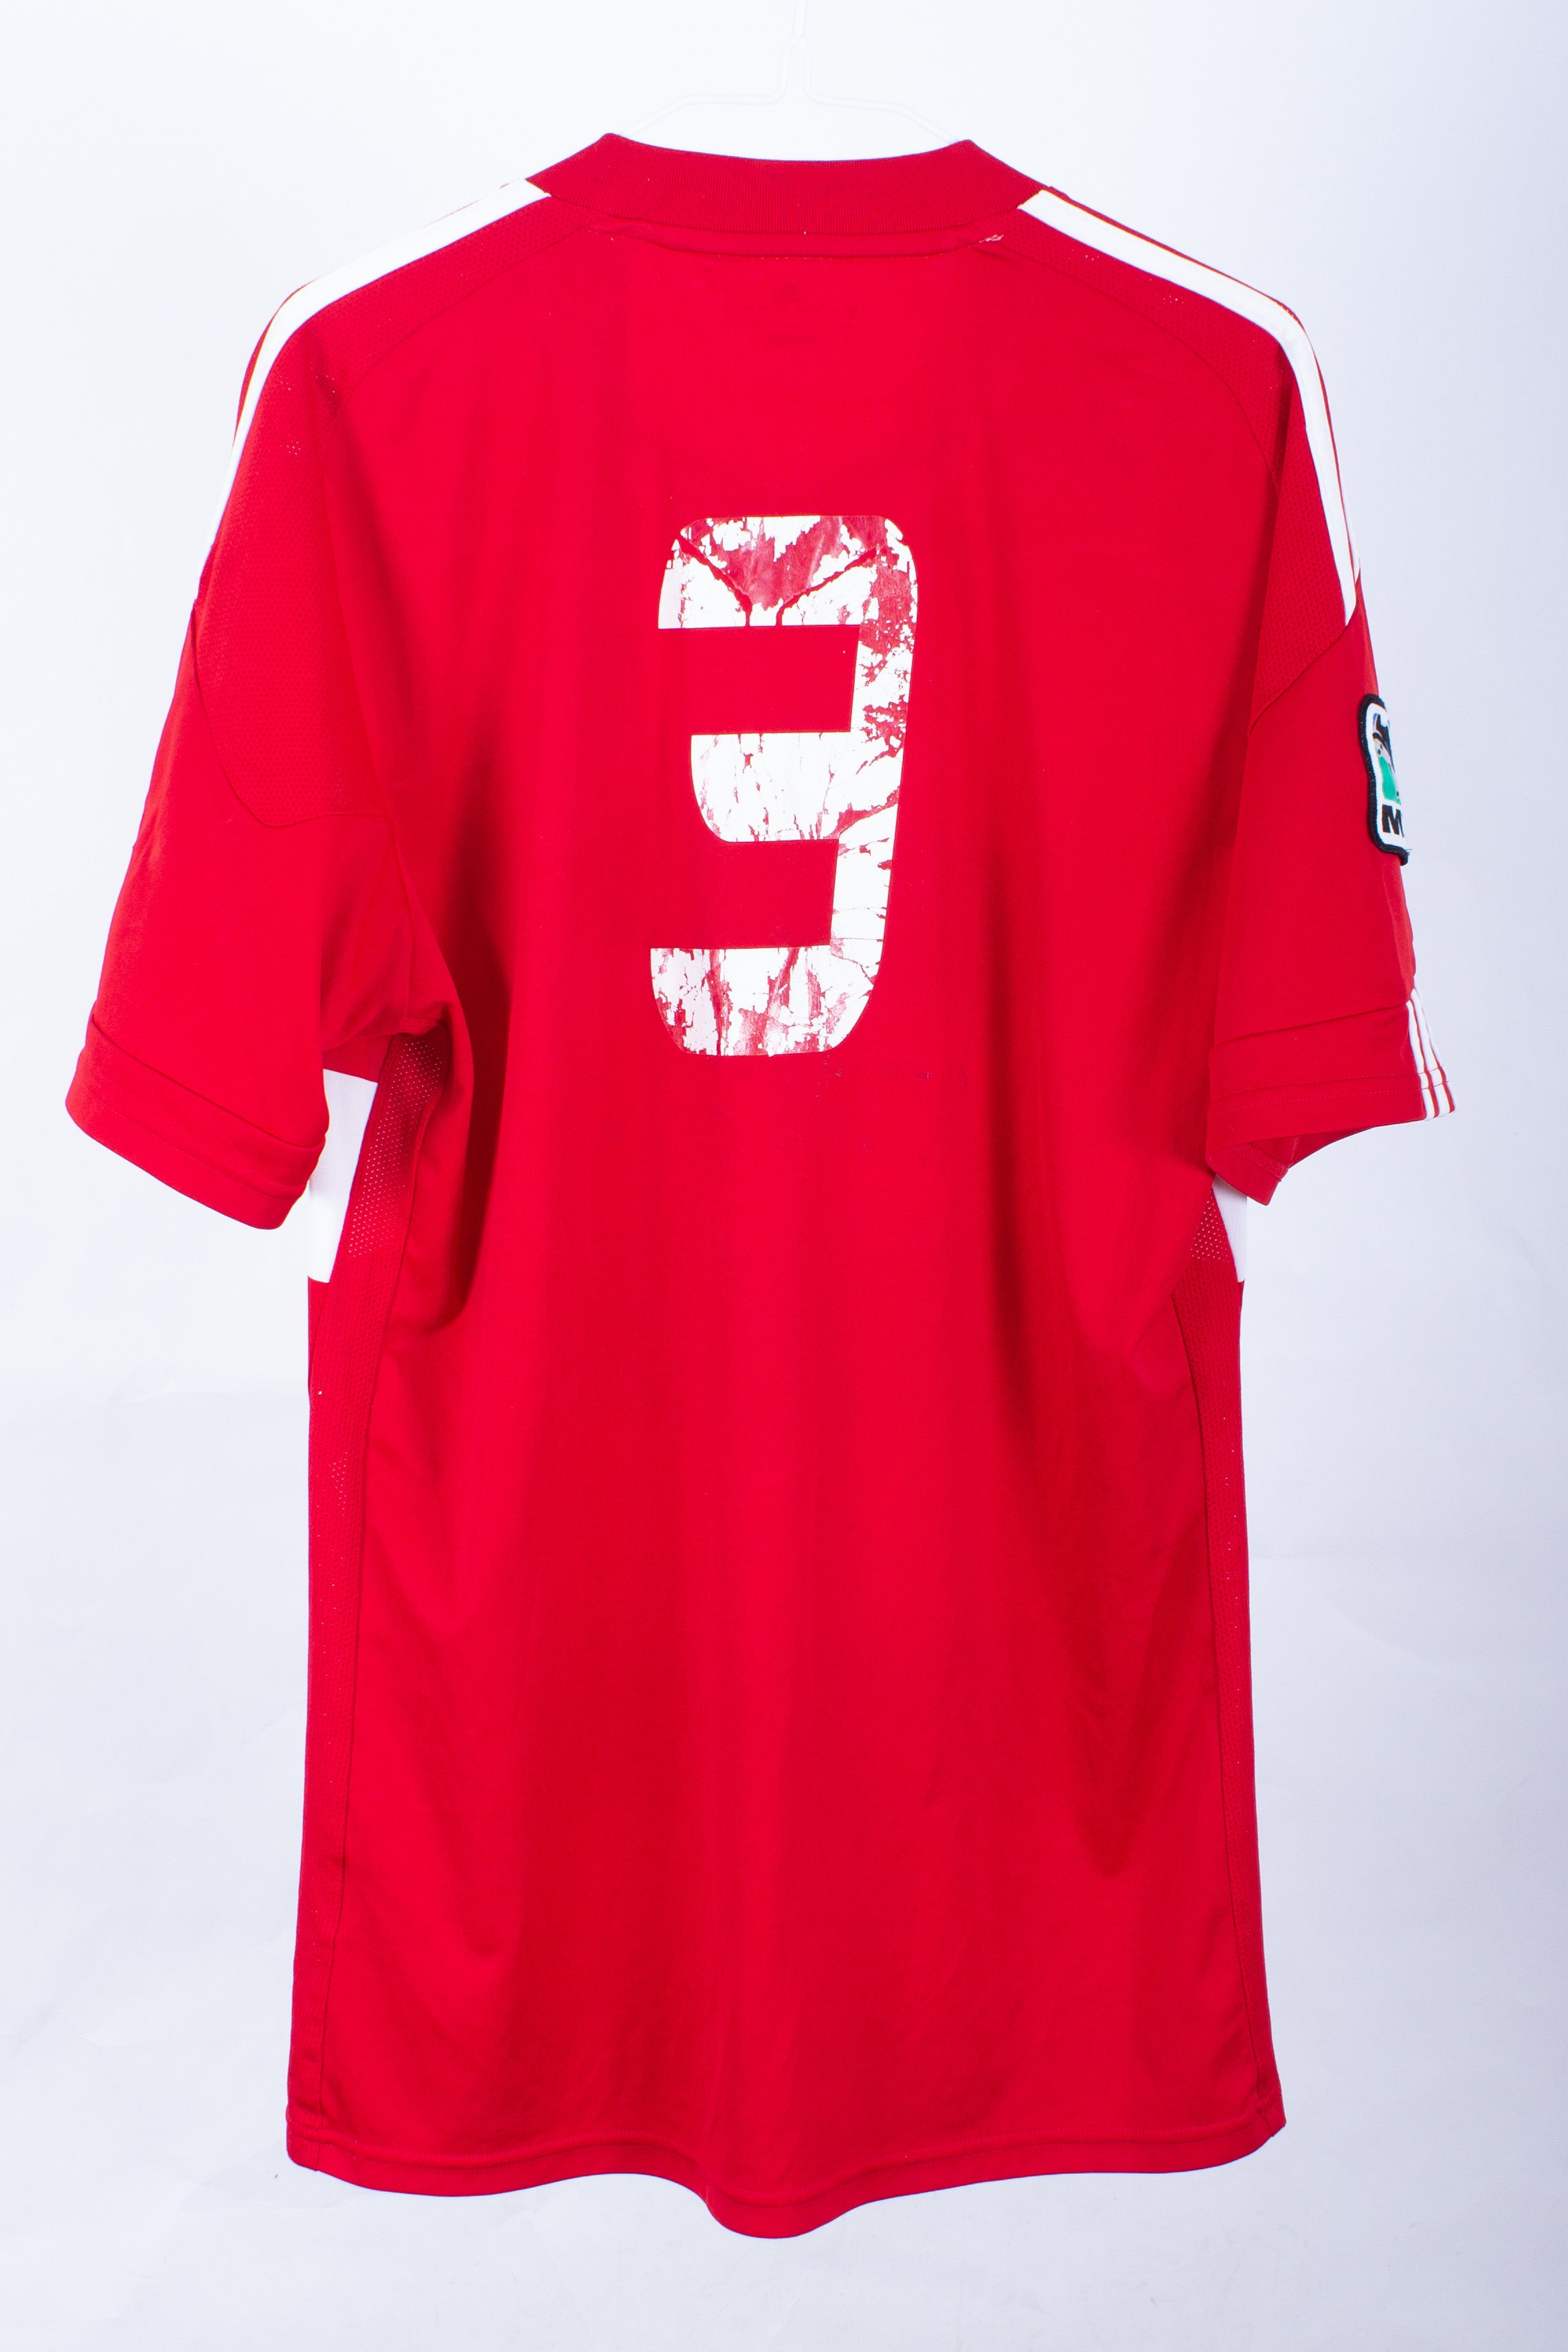 FC Dallas 2011 Home Shirt